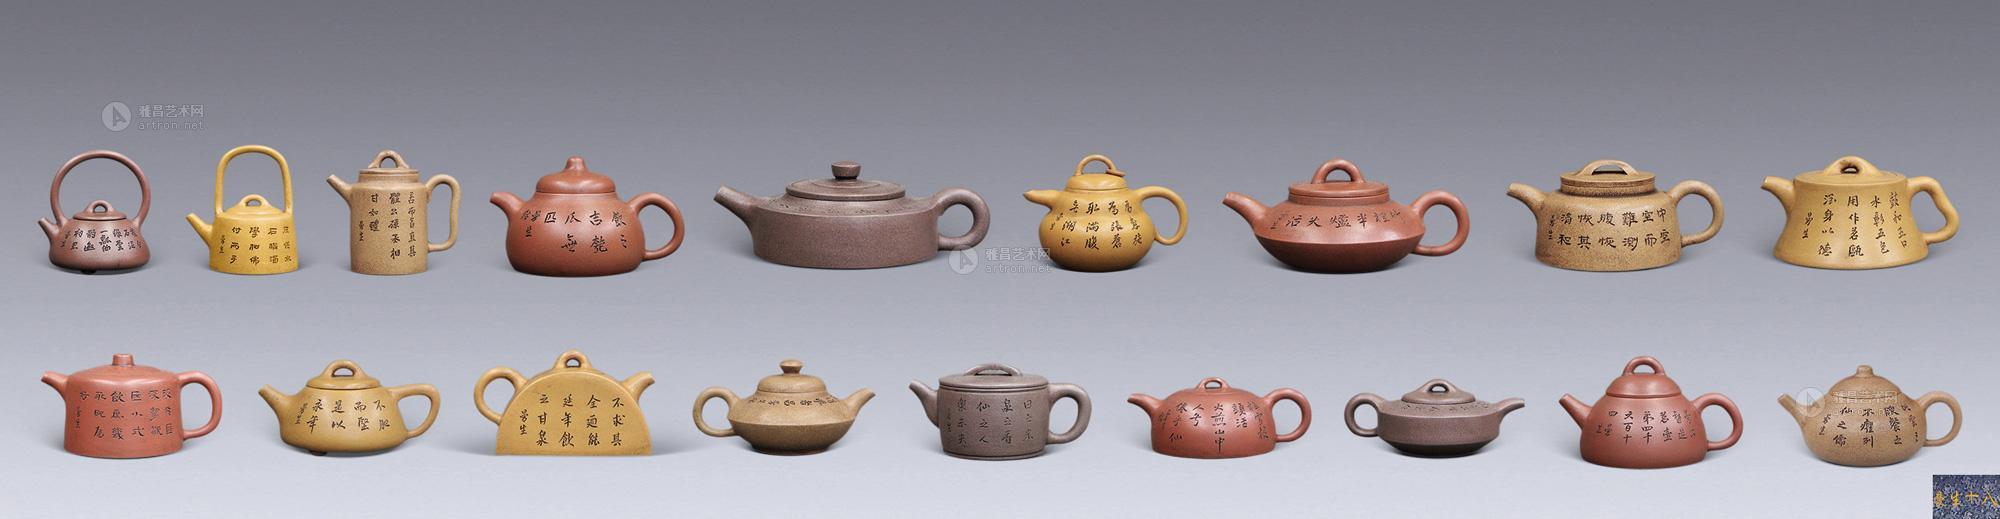 【清 曼生十八式茶壶(一套】拍卖品_图片_价格_鉴赏_紫砂_雅昌艺术